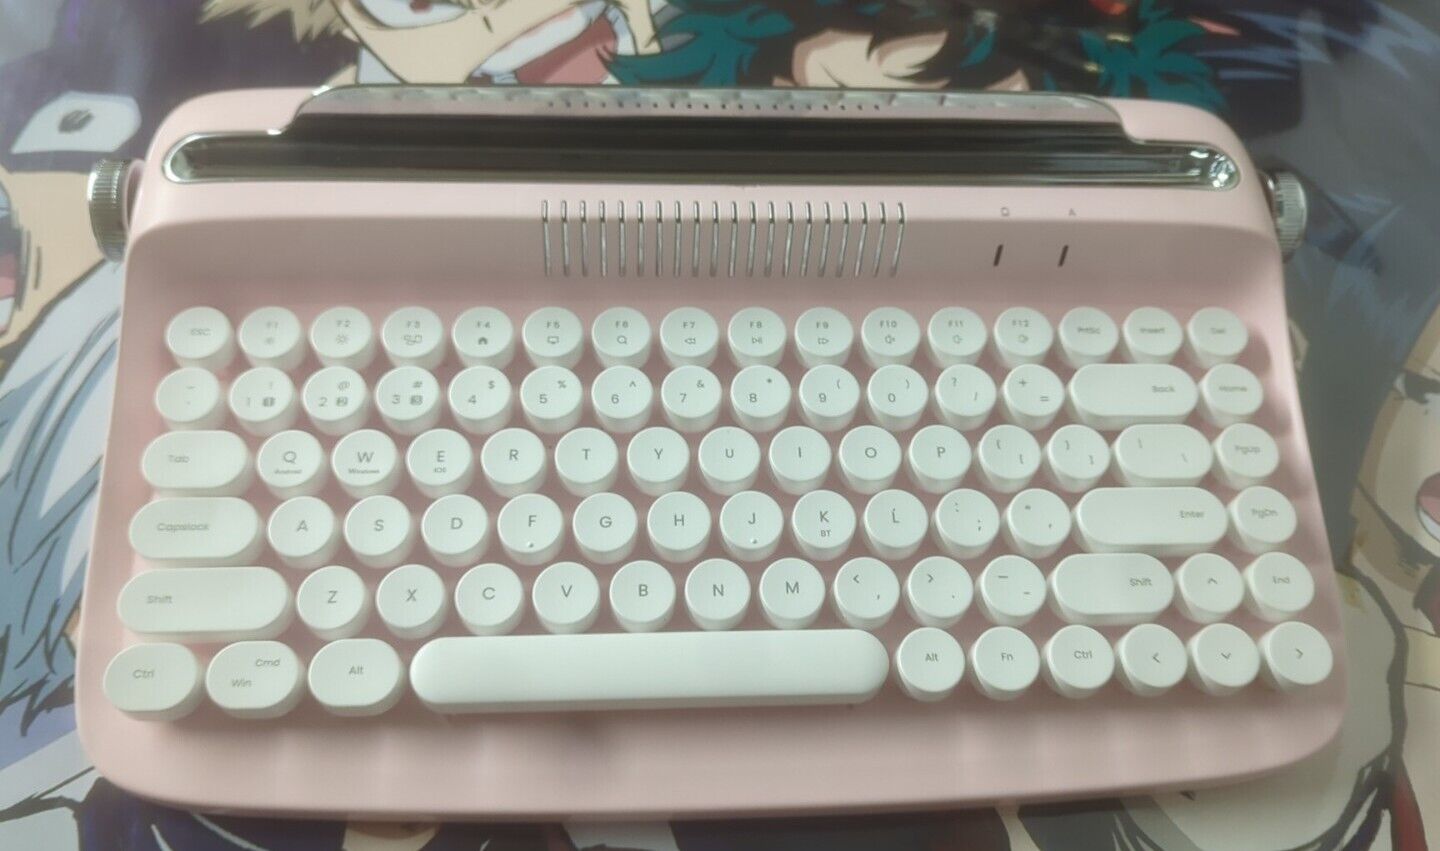 Actto Retro Mini Keyboard 